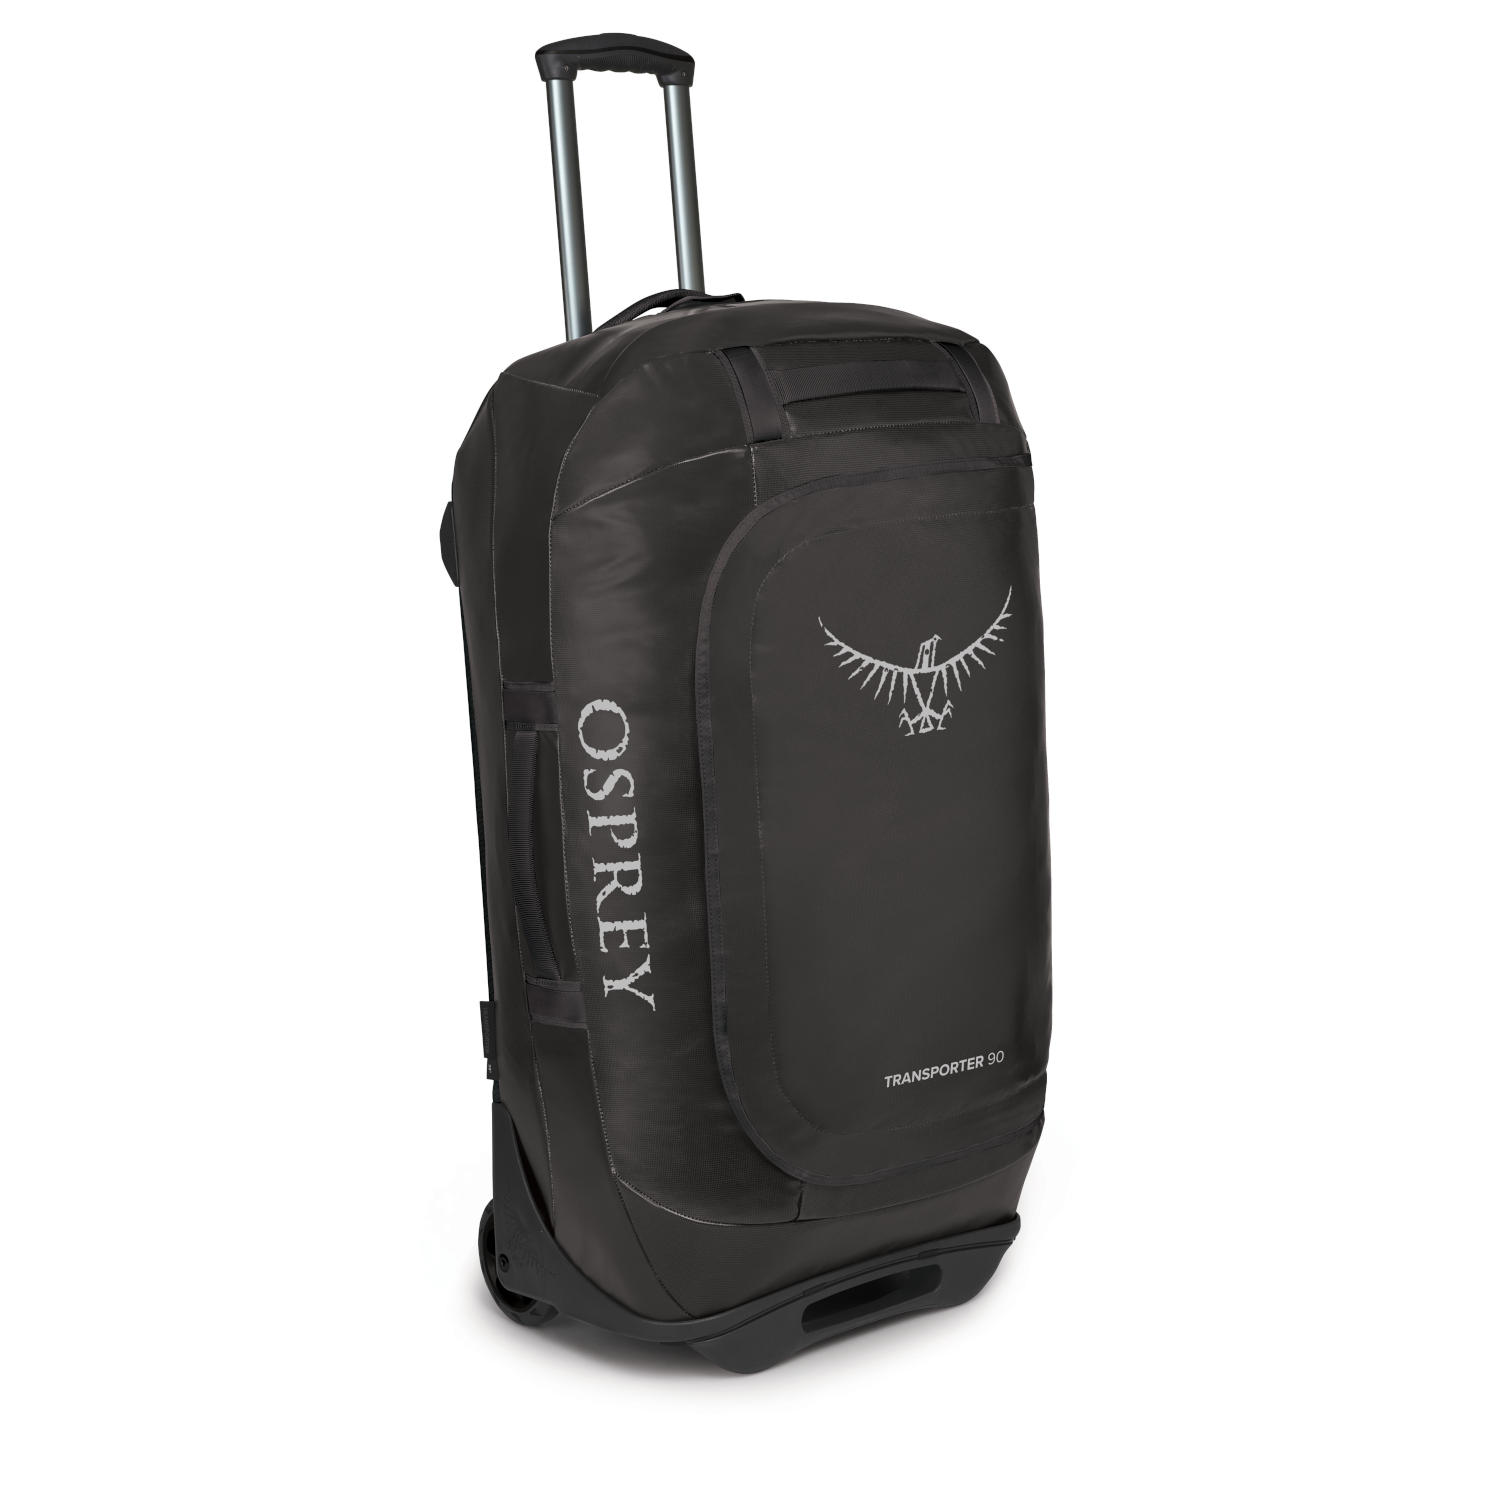 Productfoto van Osprey Rolling Transporter 90 Travel Bag - Black